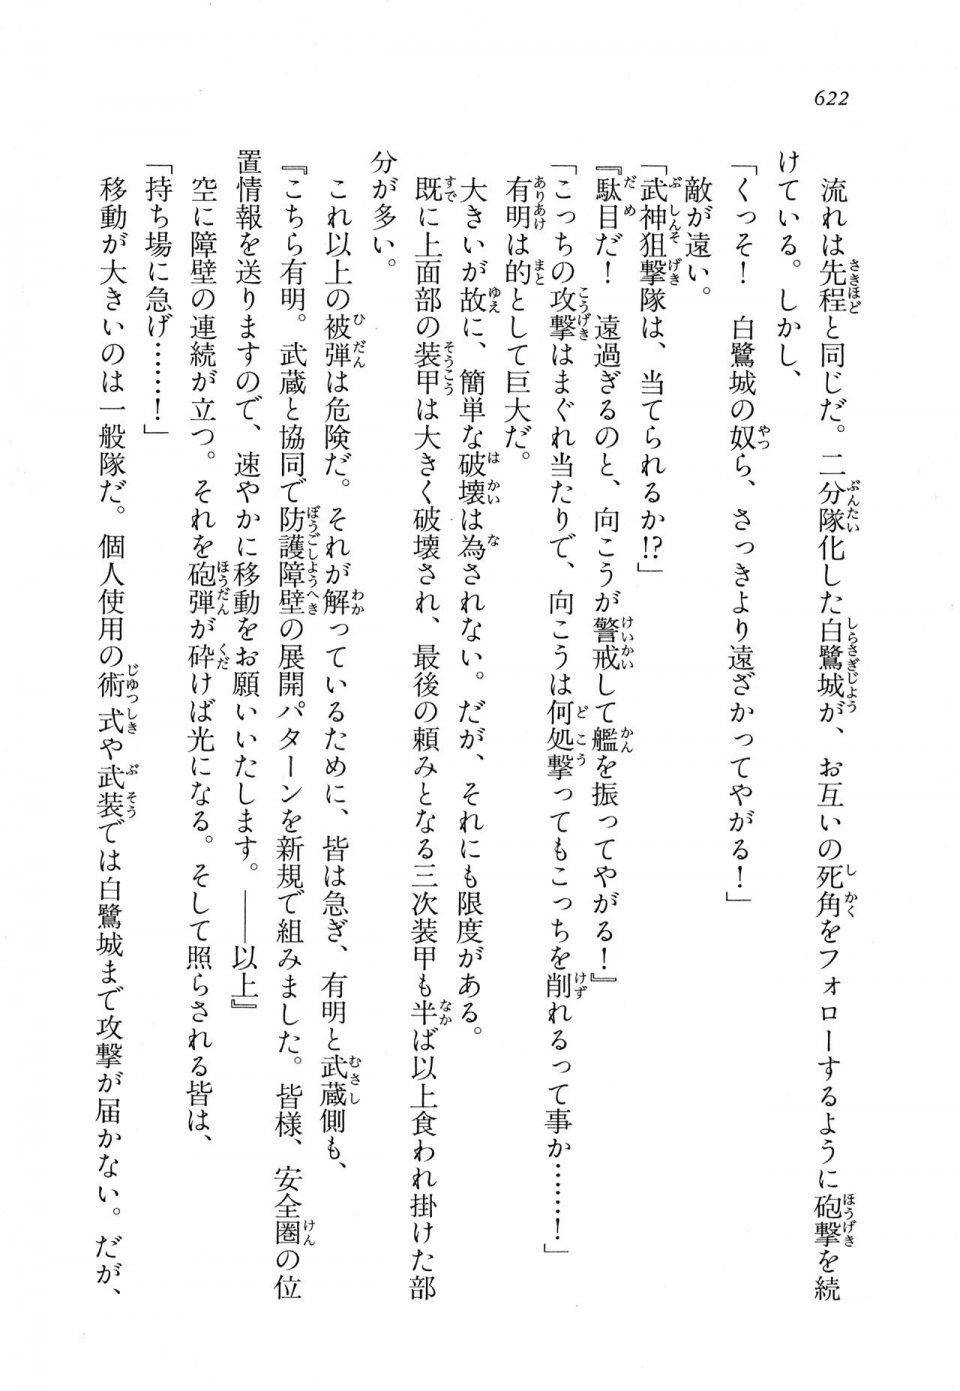 Kyoukai Senjou no Horizon LN Vol 11(5A) - Photo #622